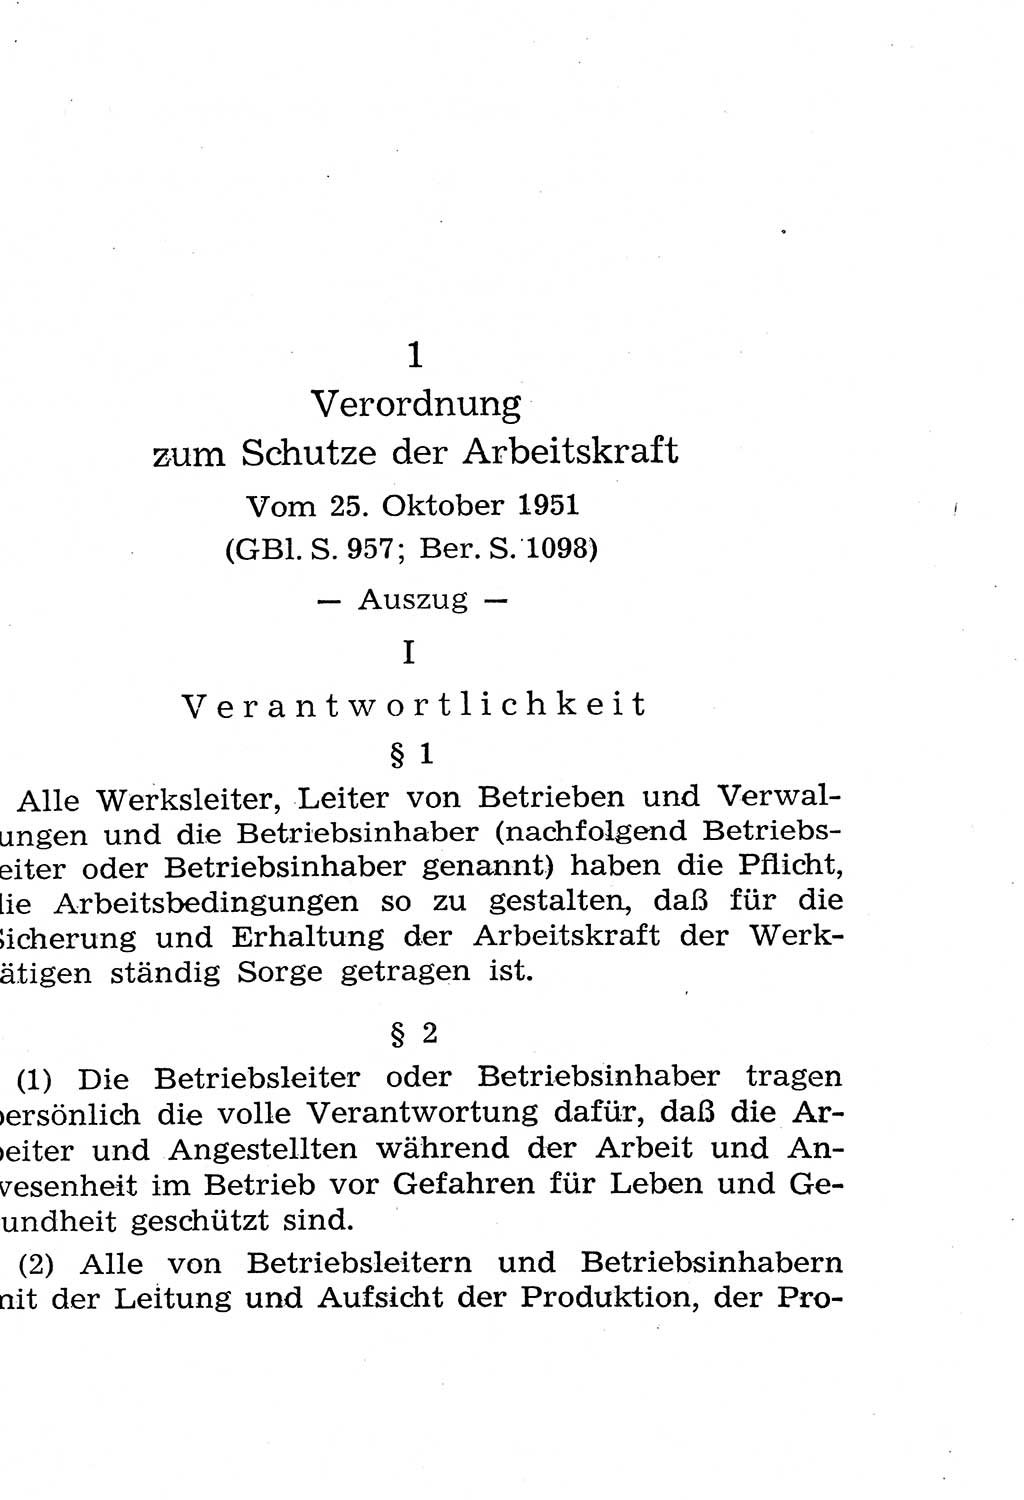 Strafgesetzbuch (StGB) und andere Strafgesetze [Deutsche Demokratische Republik (DDR)] 1958, Seite 333 (StGB Strafges. DDR 1958, S. 333)